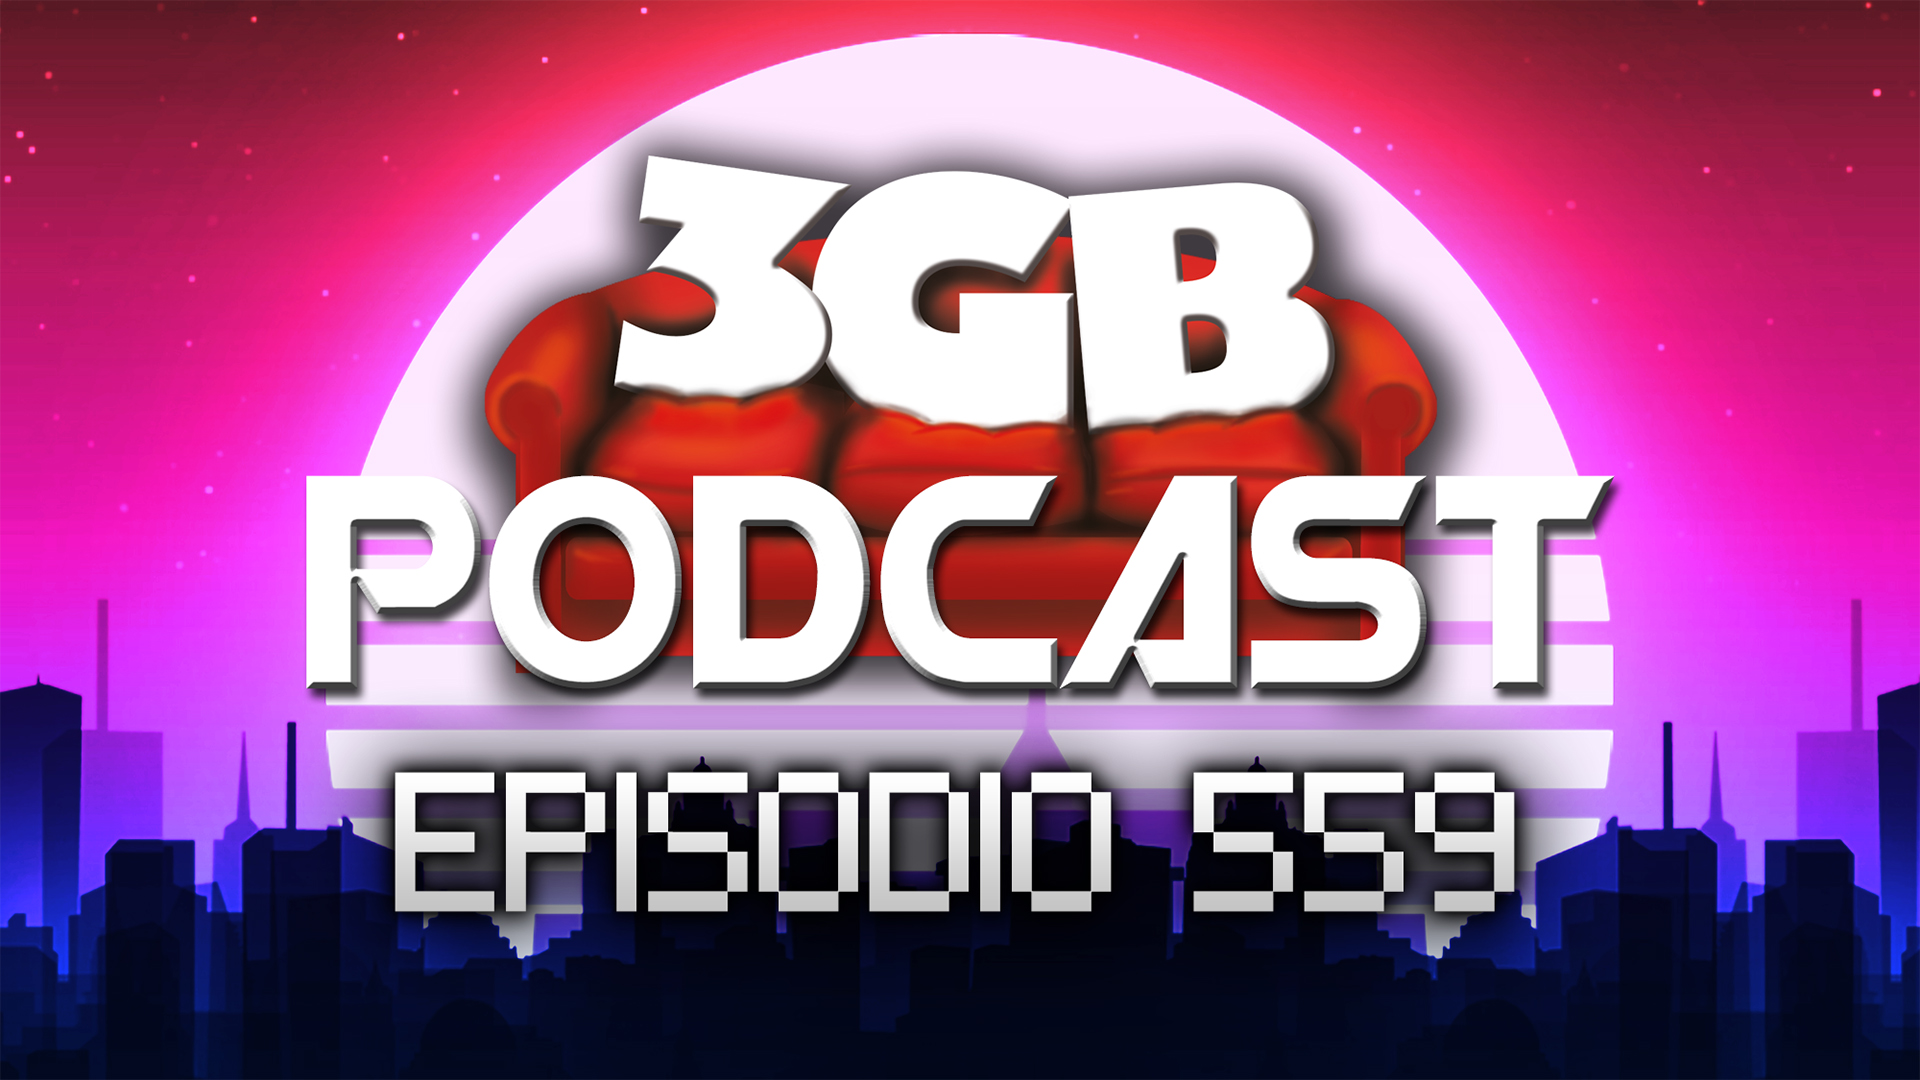 Podcast: Episodio 559, Una Mala Semana